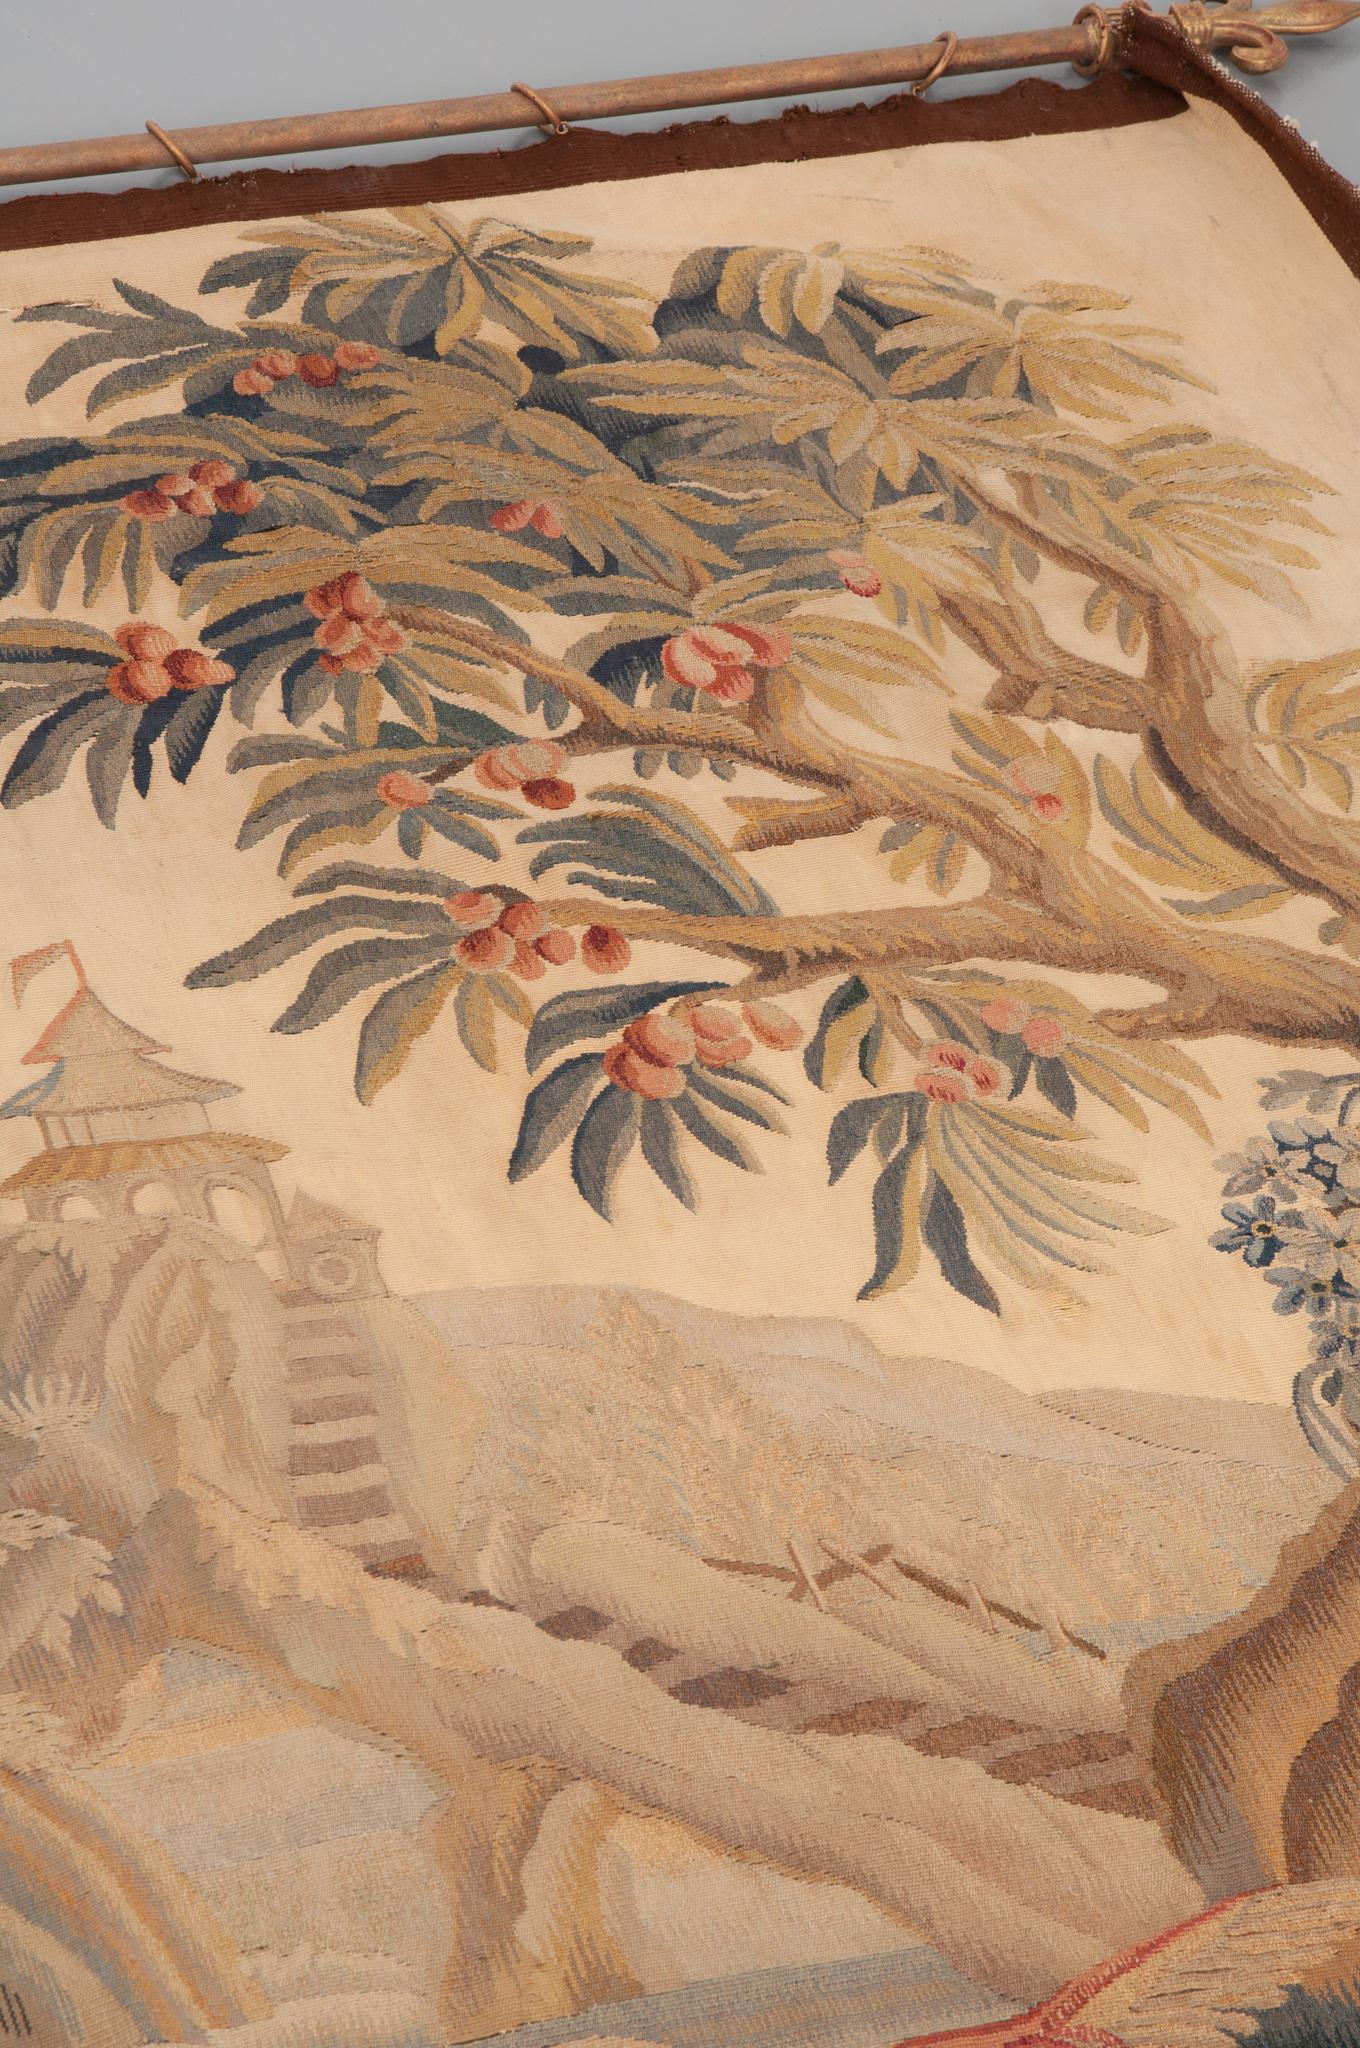 Cette Tapisserie de Verdure française du 19ème siècle, vers les années 1850, est exquise. Elle est en laine et en coton, et est suspendue à une tige de tapisserie en métal avec des anneaux. La scène est encadrée par de beaux arbres et représente